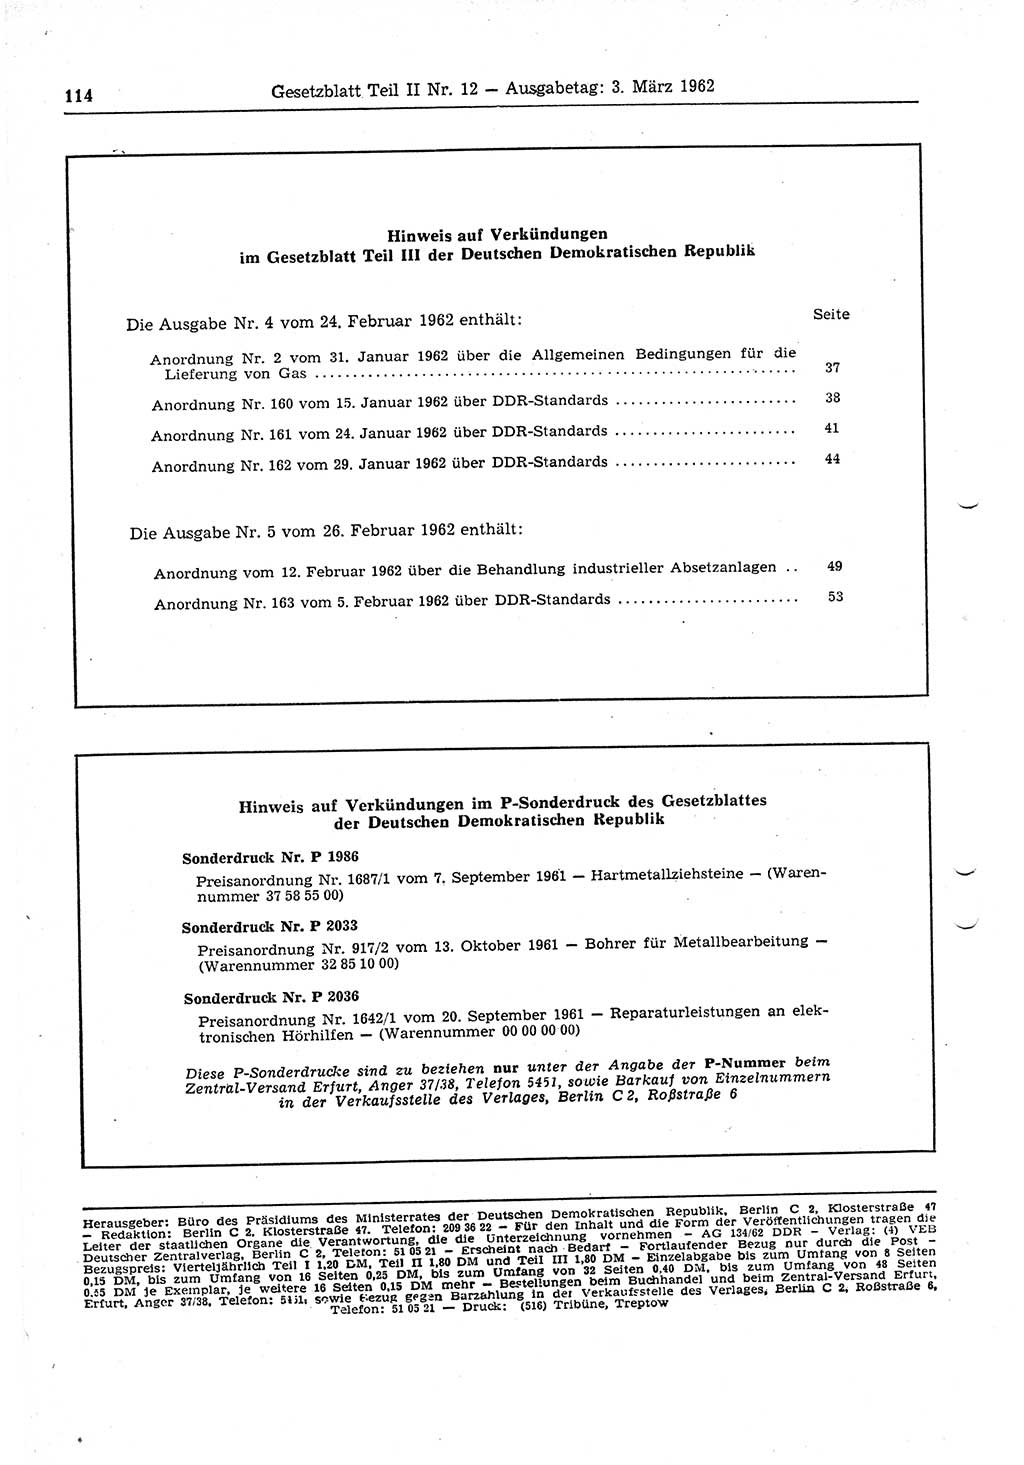 Gesetzblatt (GBl.) der Deutschen Demokratischen Republik (DDR) Teil ⅠⅠ 1962, Seite 114 (GBl. DDR ⅠⅠ 1962, S. 114)